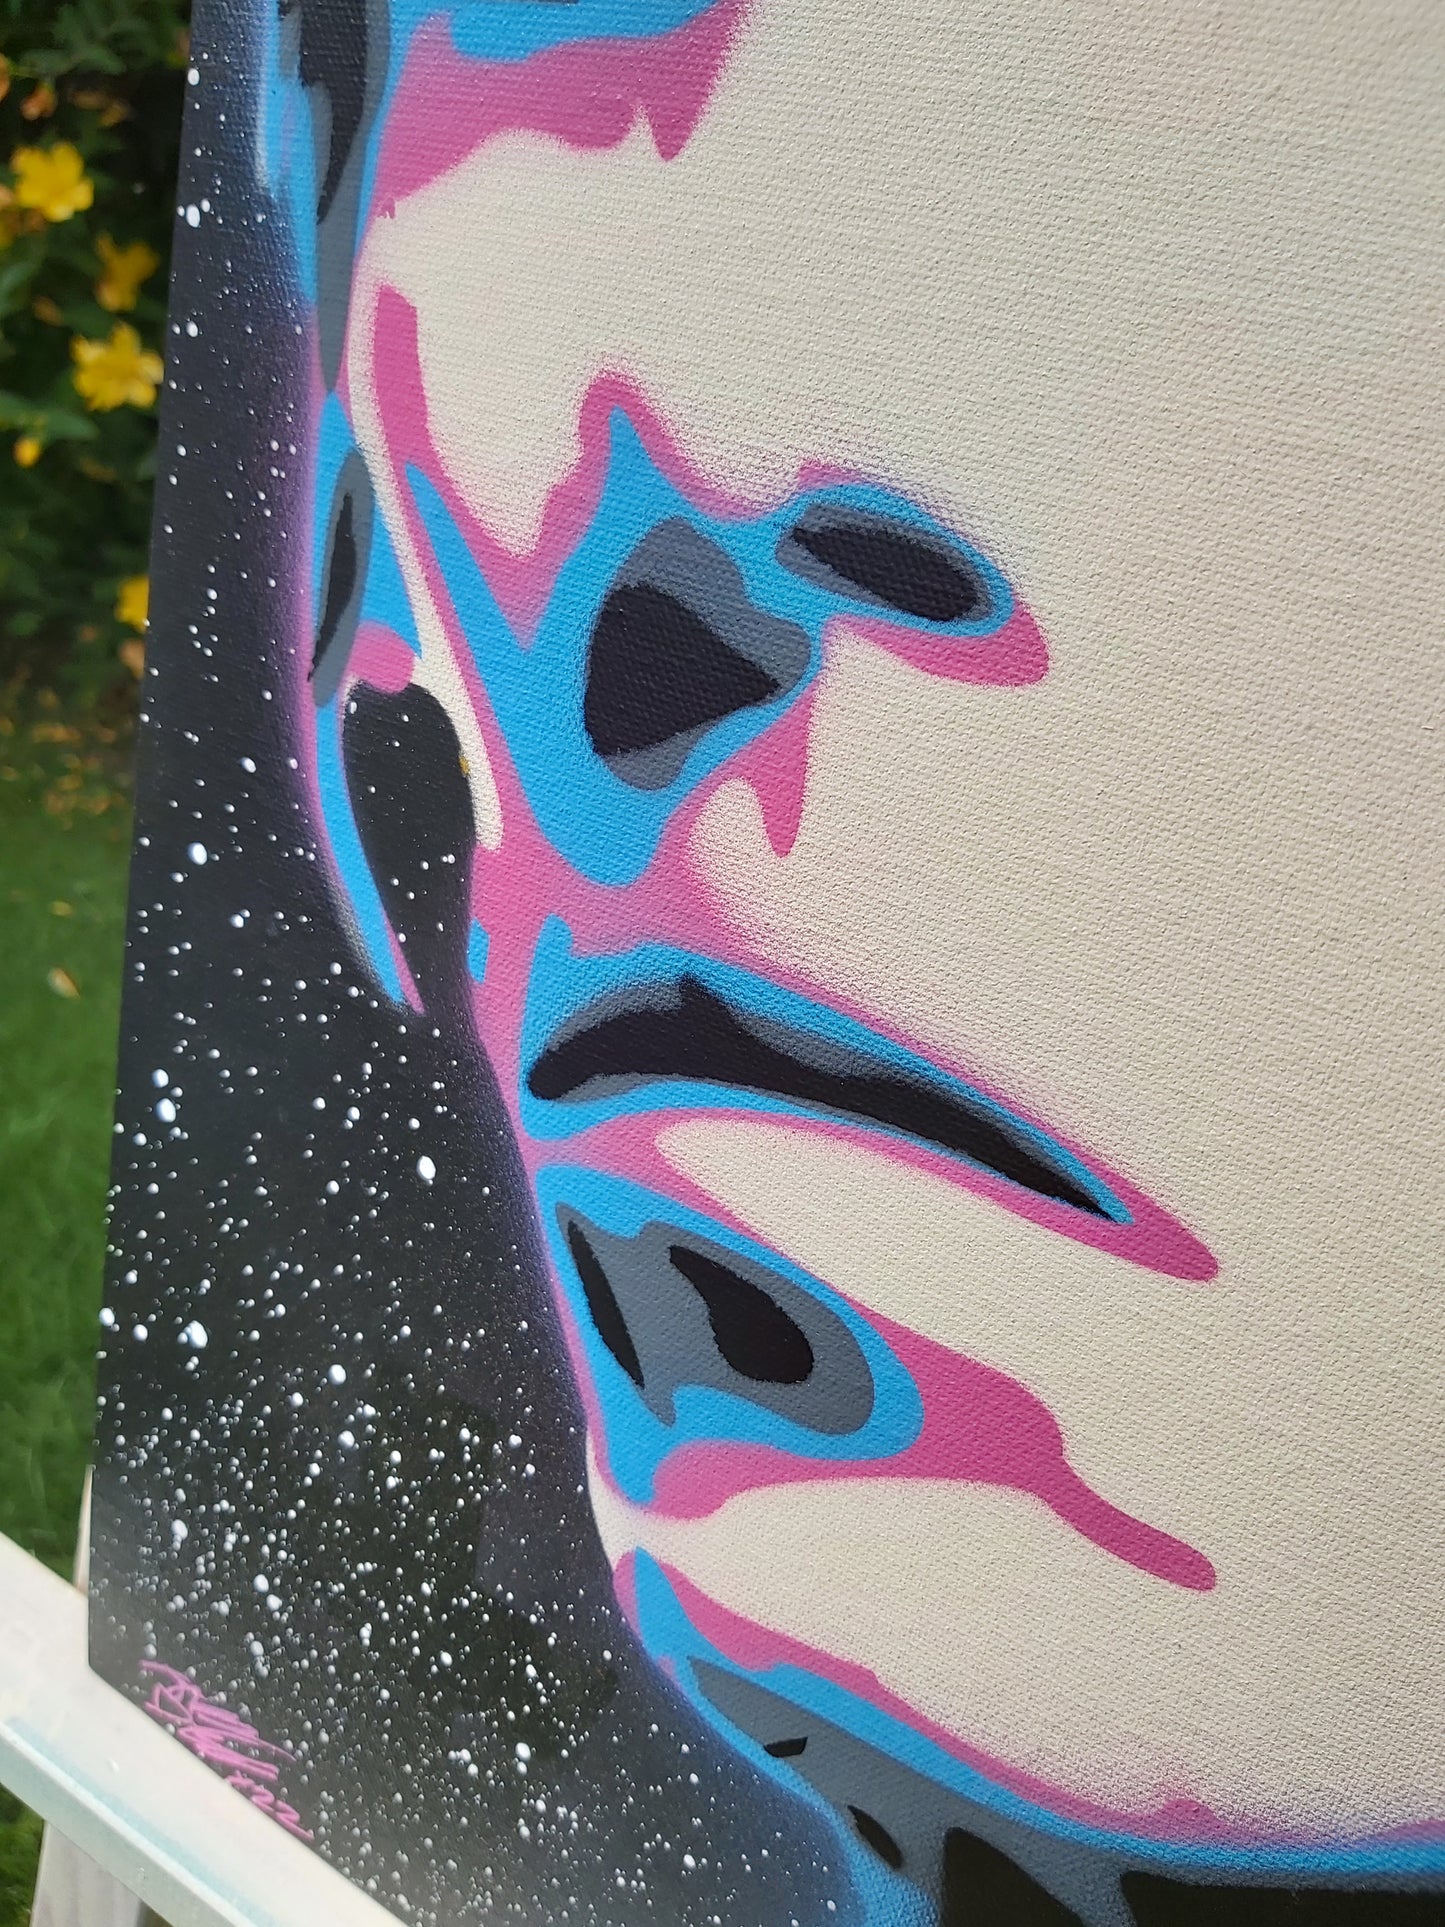 Ian Brown 16.5" x 23.4" Original Spray Painting